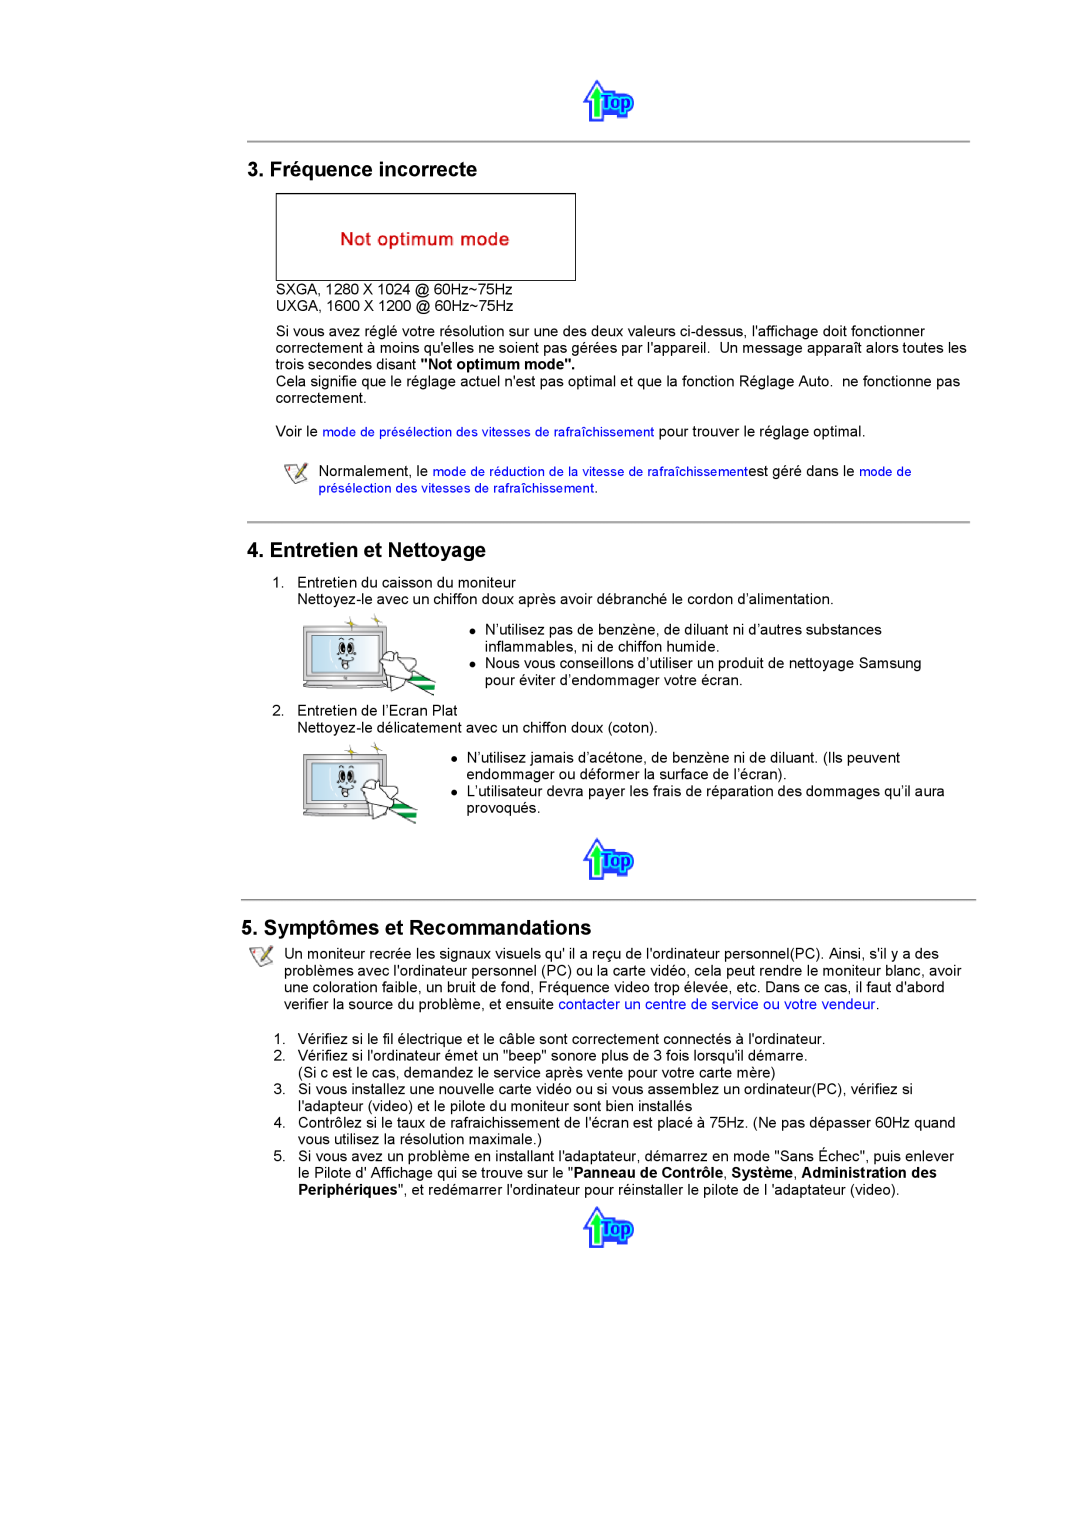 Samsung CK40PSSS/EDC, CK40PSNB/EDC manual 3. Fréquence incorrecte, Entretien et Nettoyage, Symptômes et Recommandations 